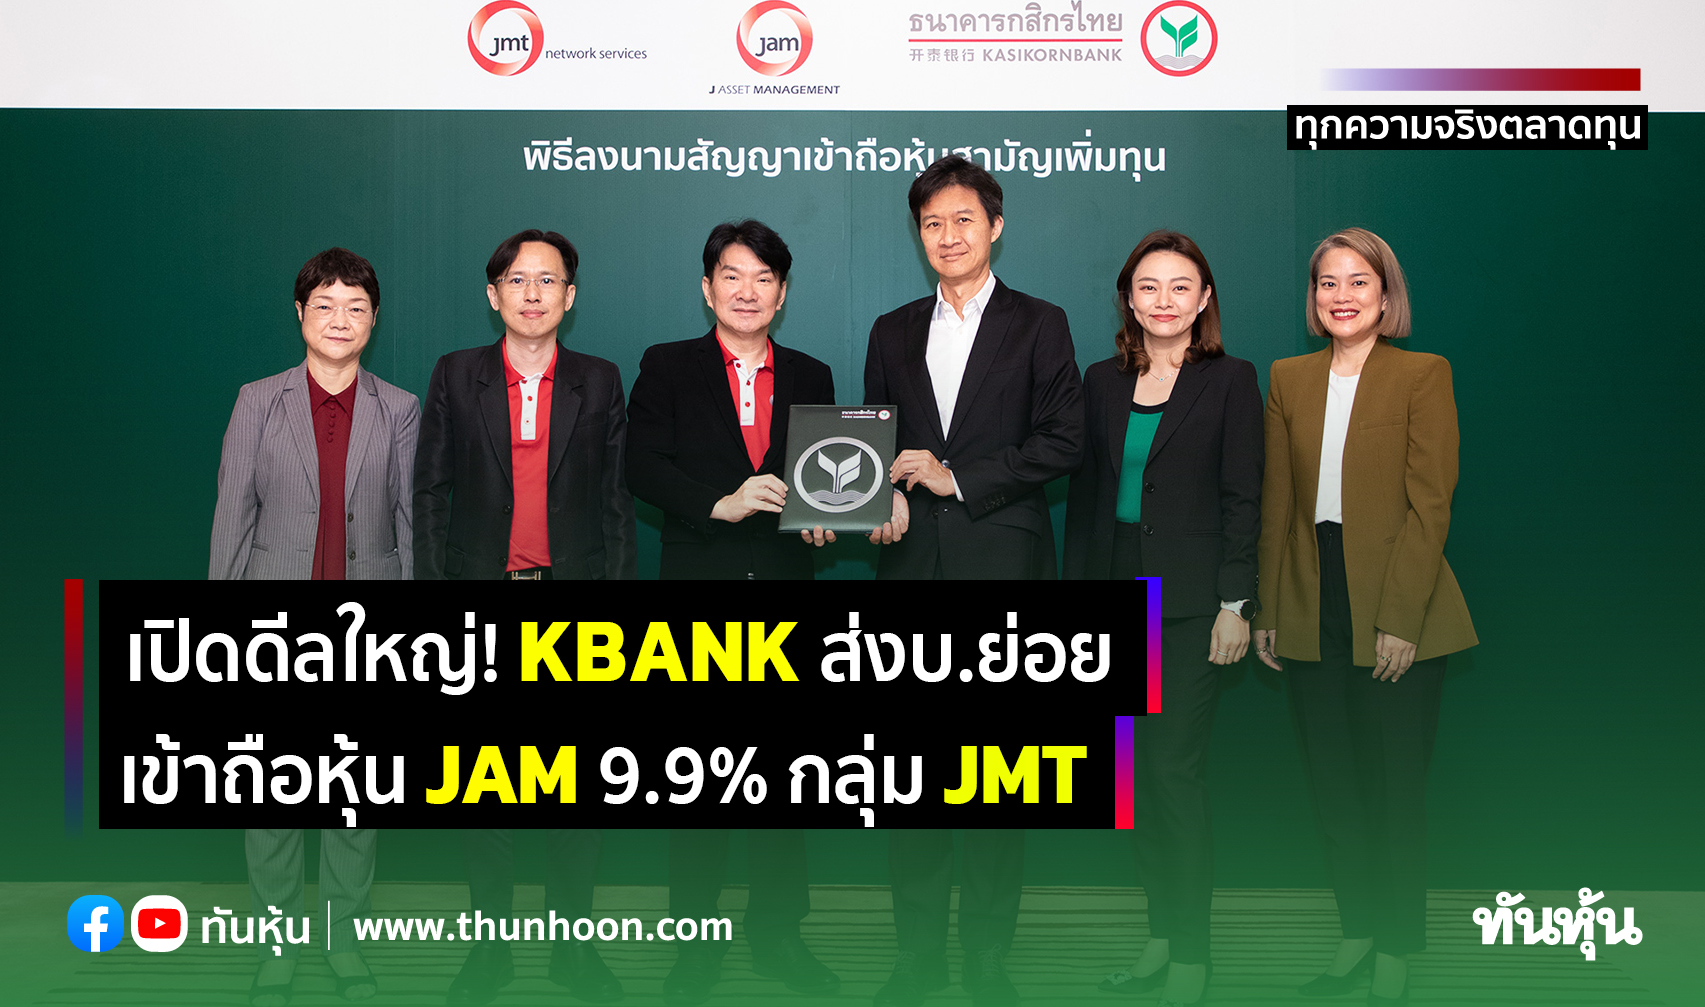 เปิดดีลใหญ่! Kbank ส่งบ.ย่อย เข้าถือหุ้น Jam 9.9% กลุ่ม Jmt - Thunhoon